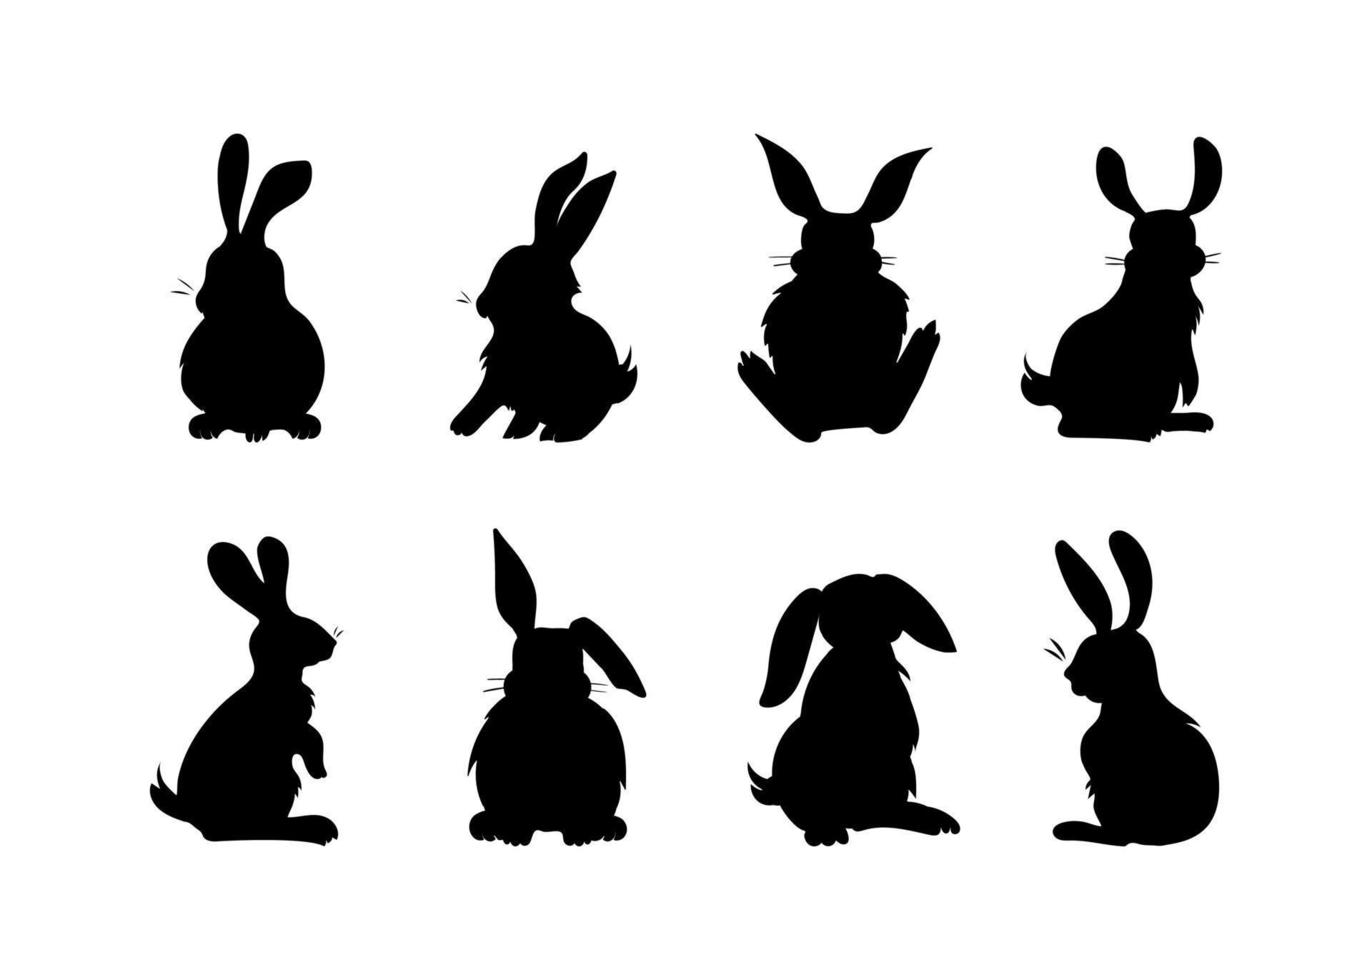 conjunto de ilustraciones de conejos esponjosos, liebres. conejitos en varias poses. siluetas dibujadas a mano con relleno de color negro. imágenes prediseñadas simbólicas artísticas hechas en líneas simples, para impresiones vector